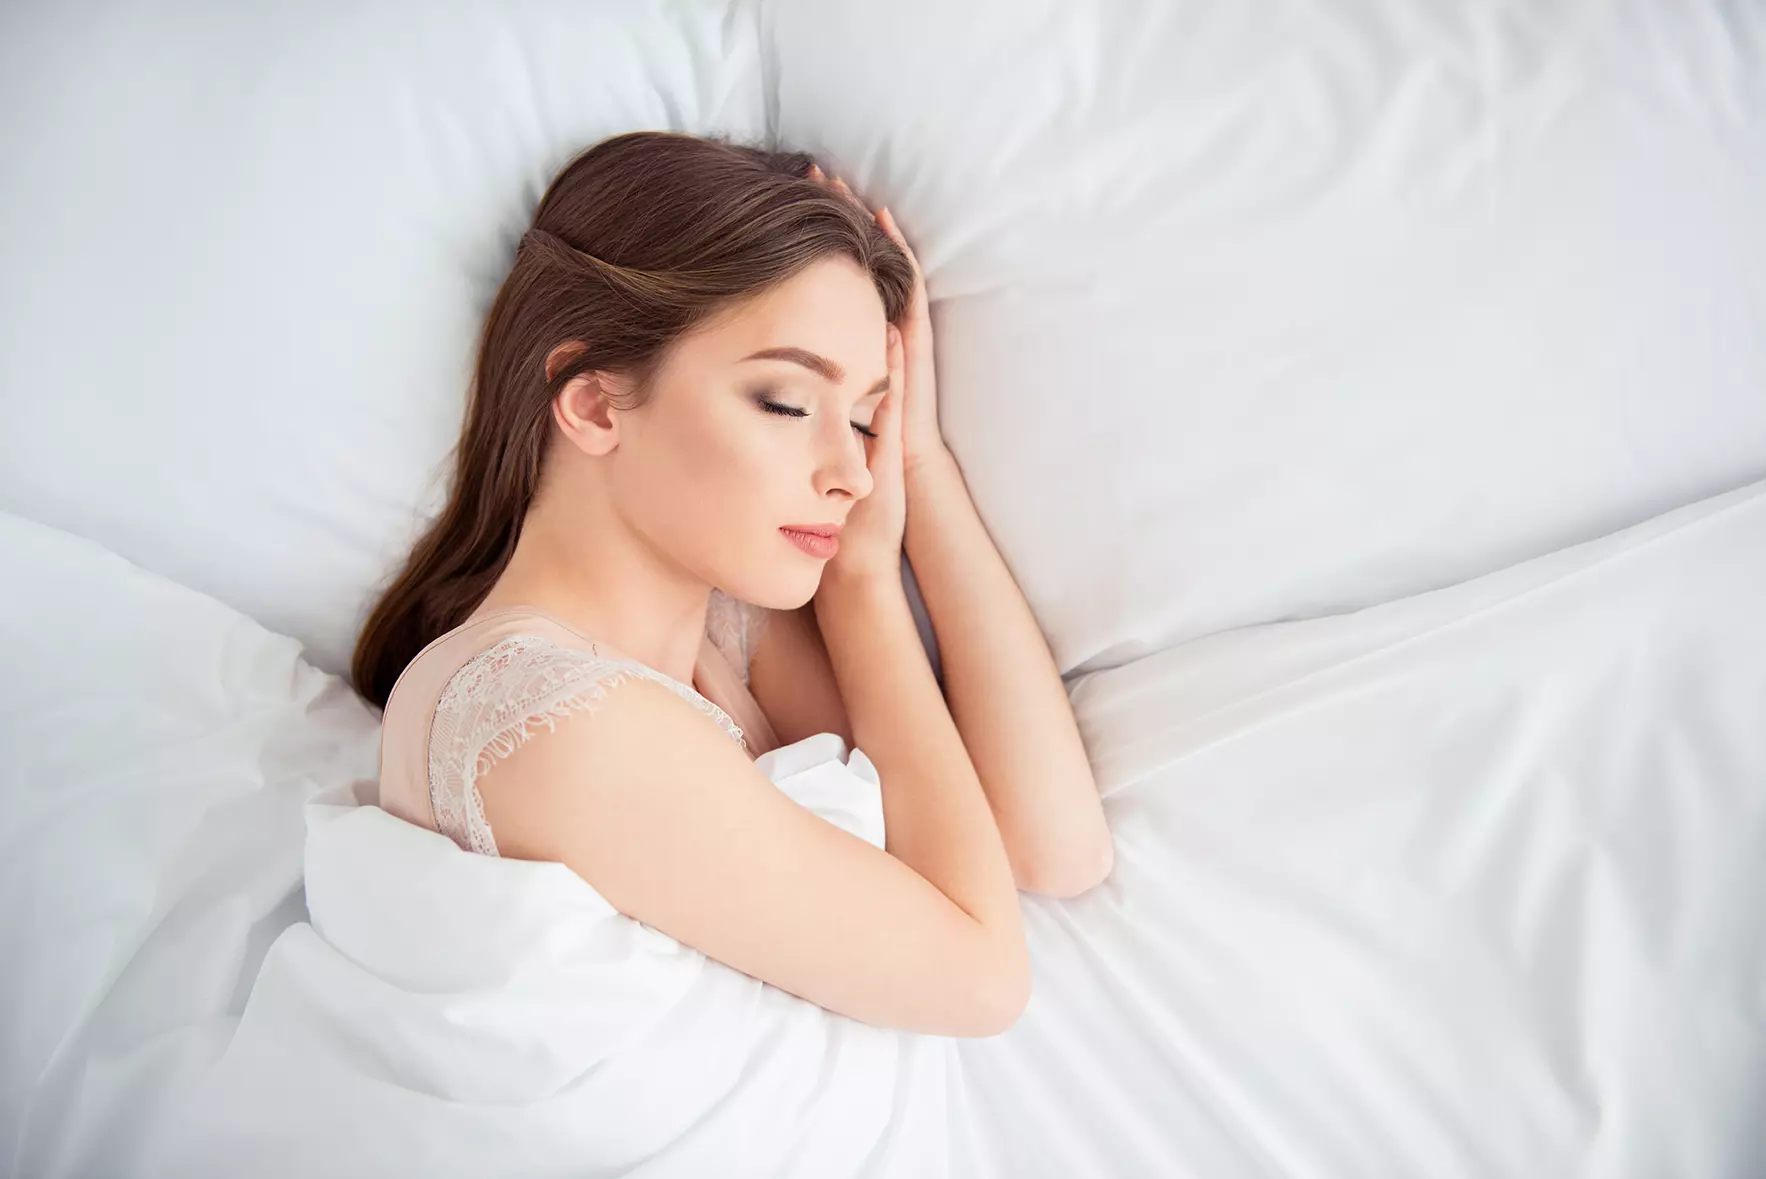 Mujer durmiendo en una cama representando a Dormio, guante creado por el MIT que puede controlar el sueño de una persona.